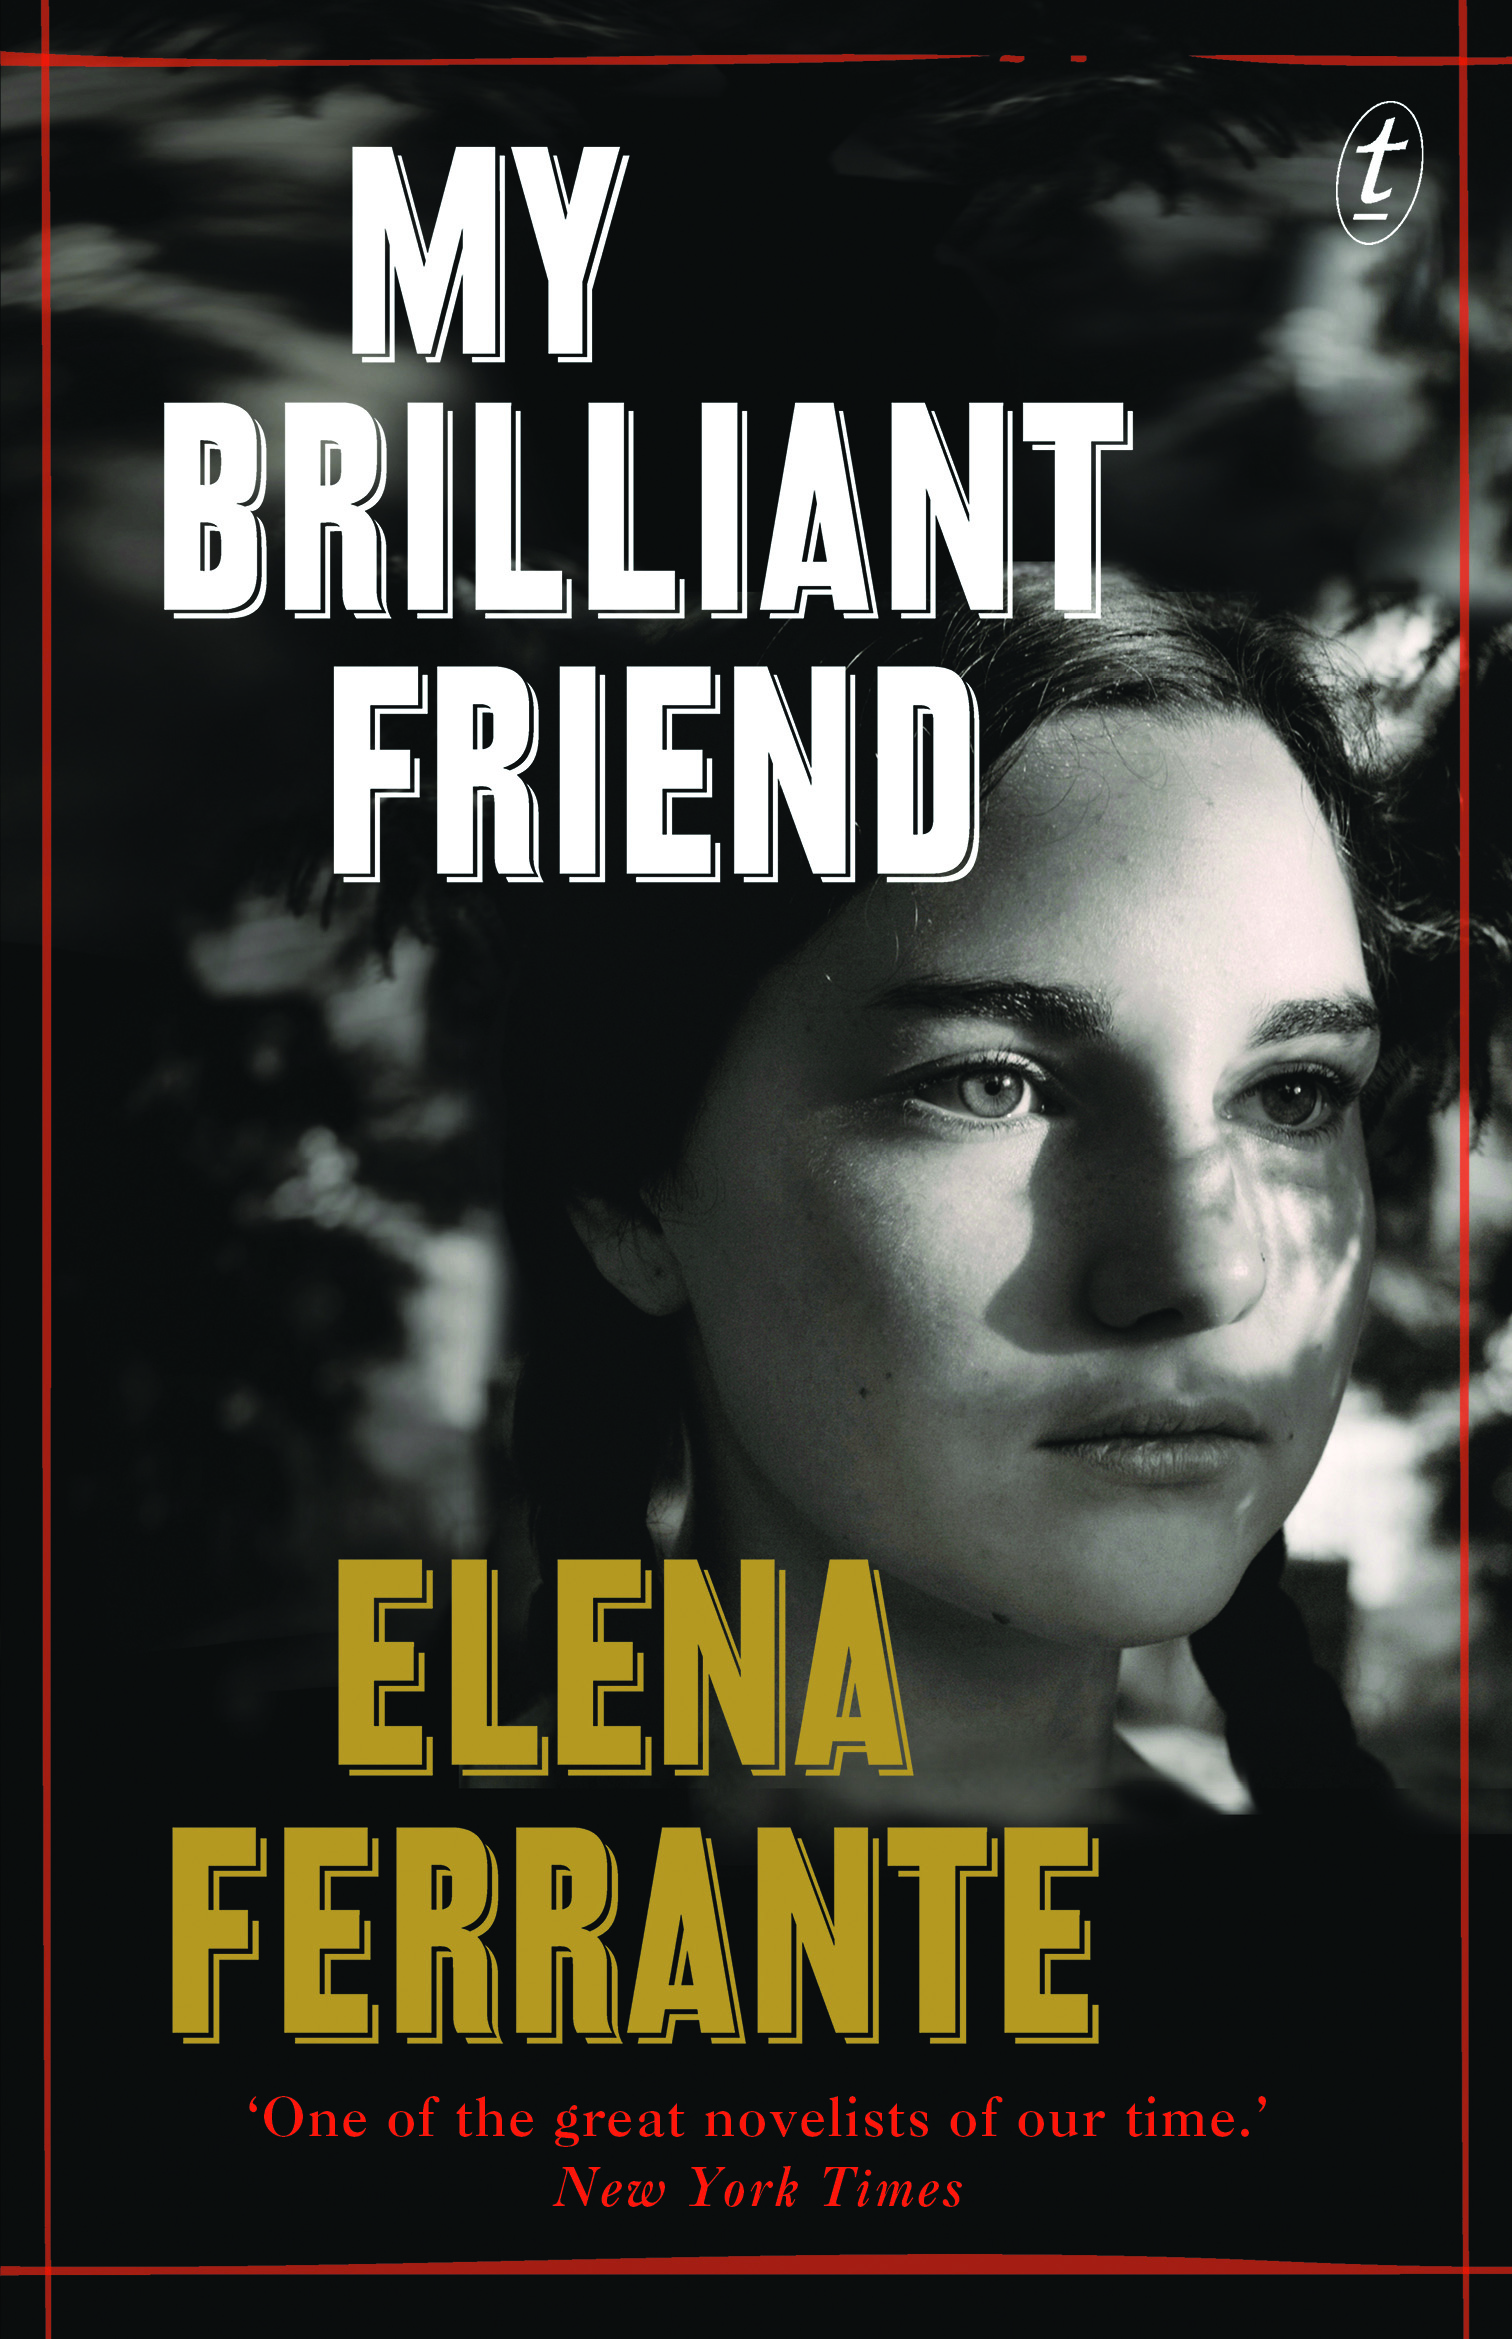  Book review: My Brilliant Friend by Elena Ferrante